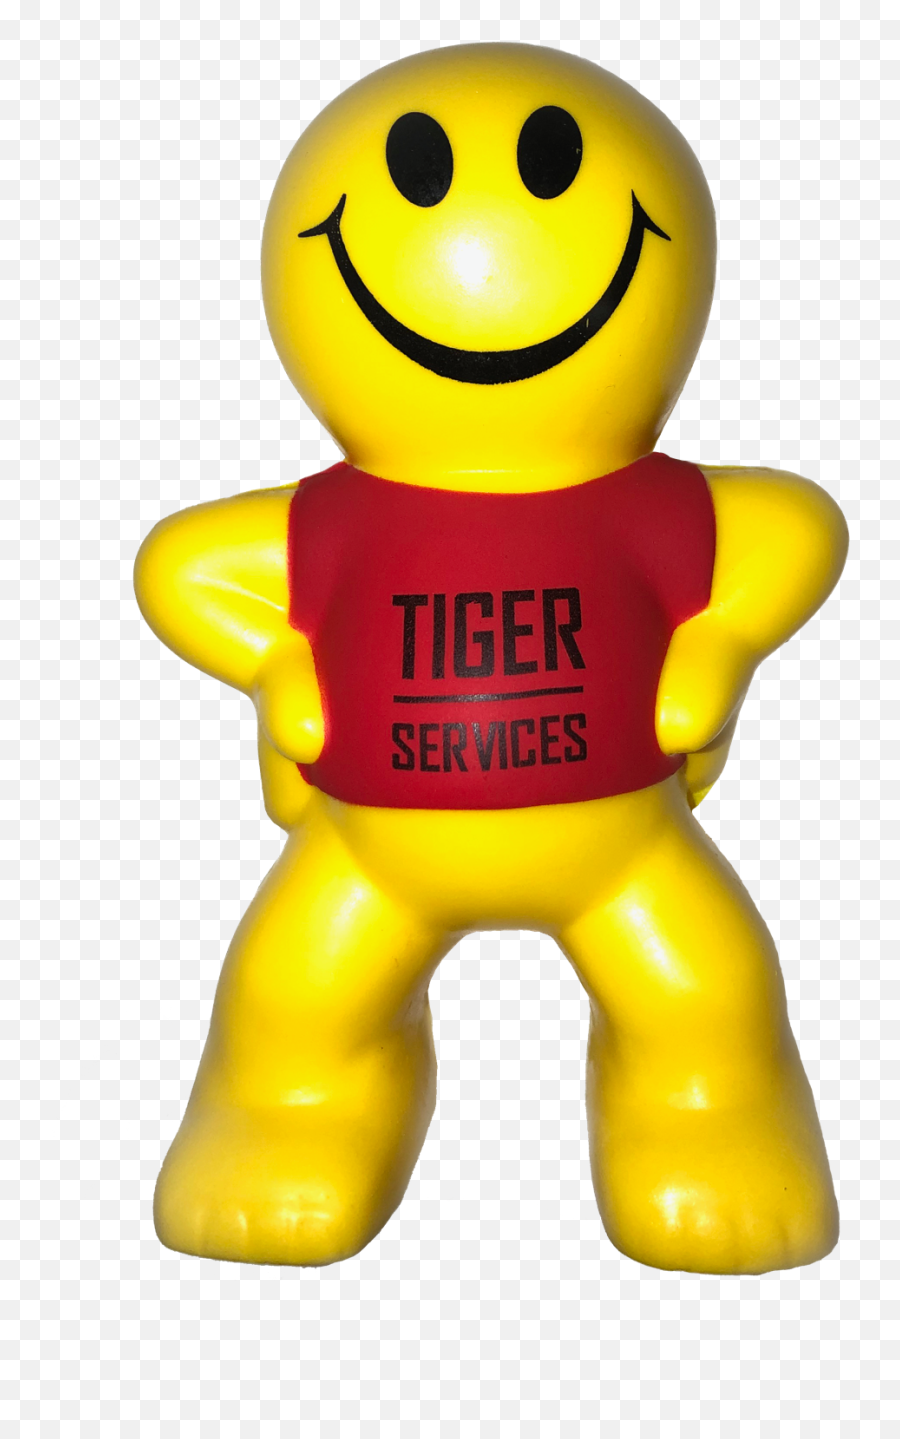 Tiger Services Air Conditioning U0026 Heating Reviews - San Happy Emoji,Tigers Emoticon